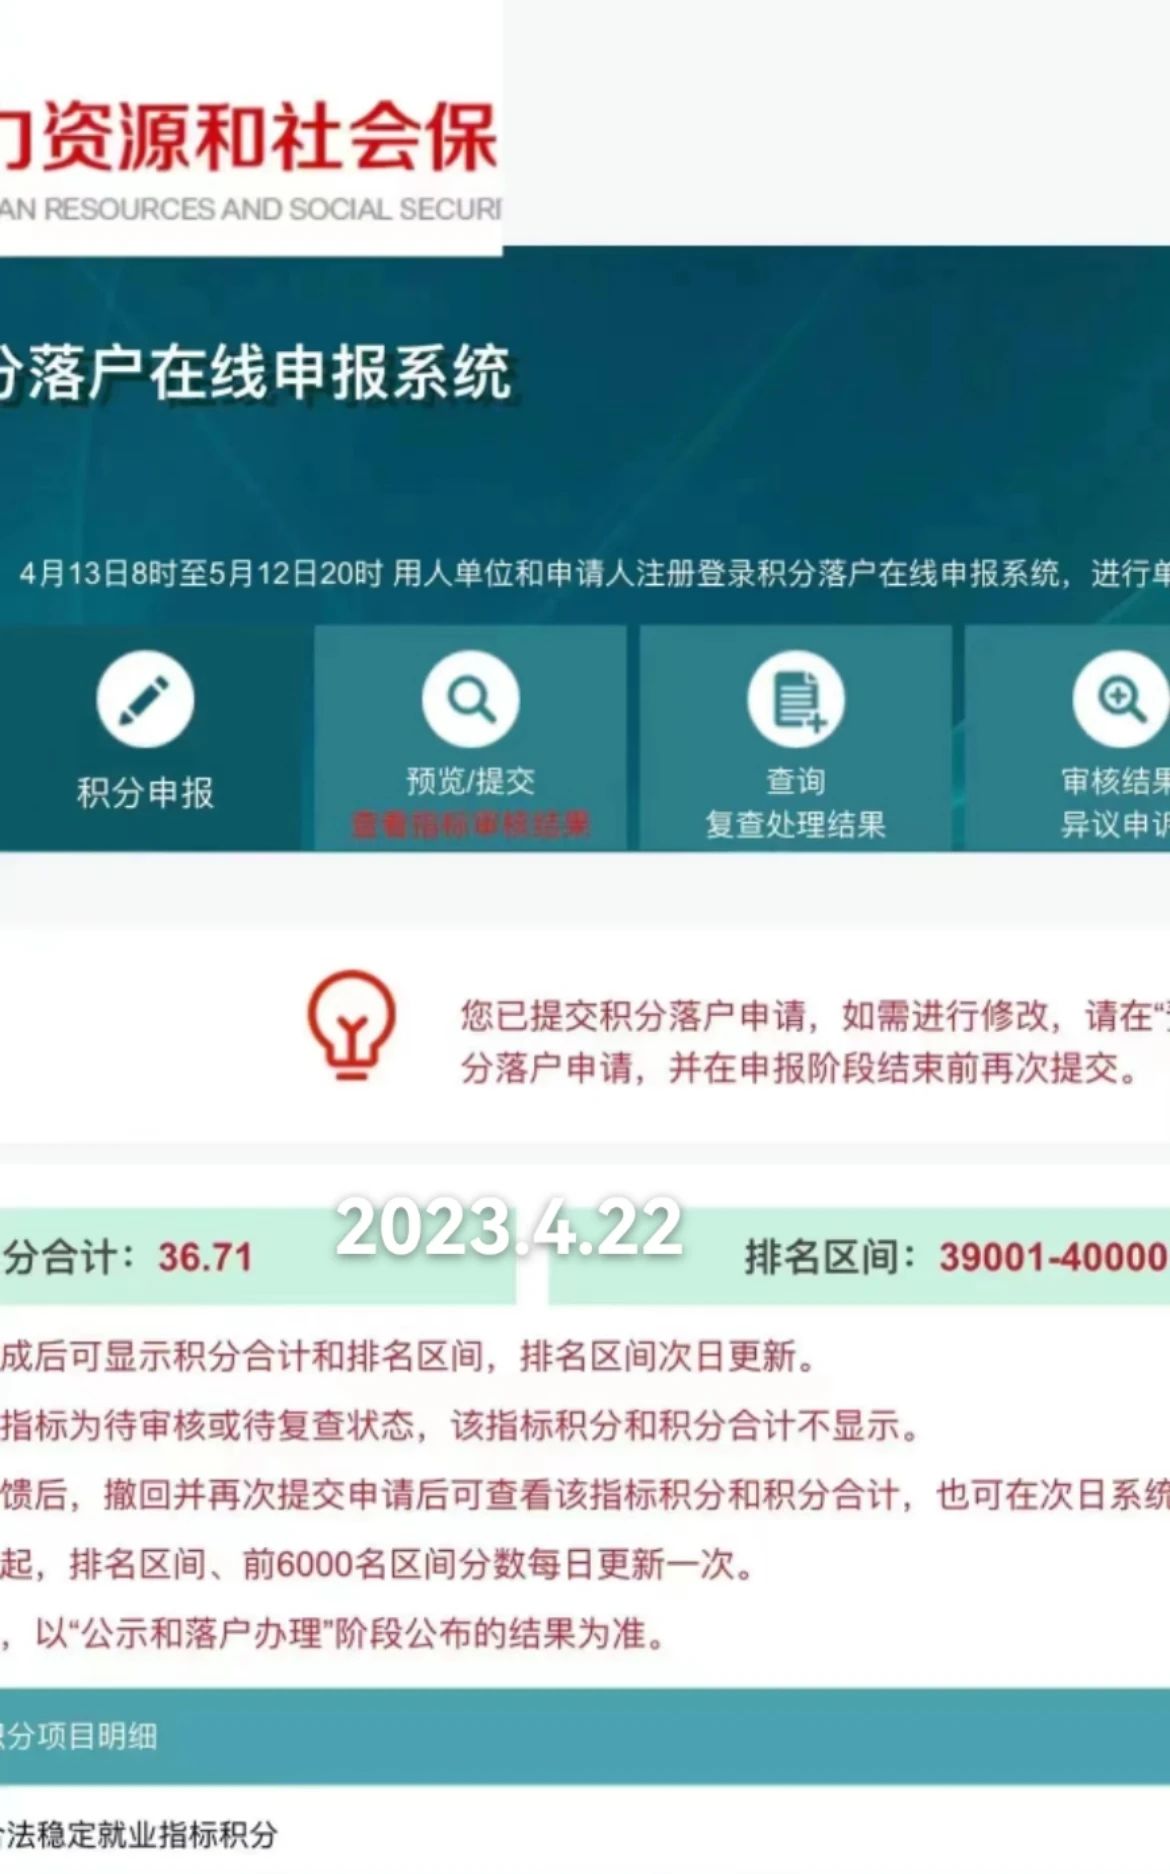 2023年北京积分落户前6000名区间排名、最低分数、密度及分数线（4月22日）